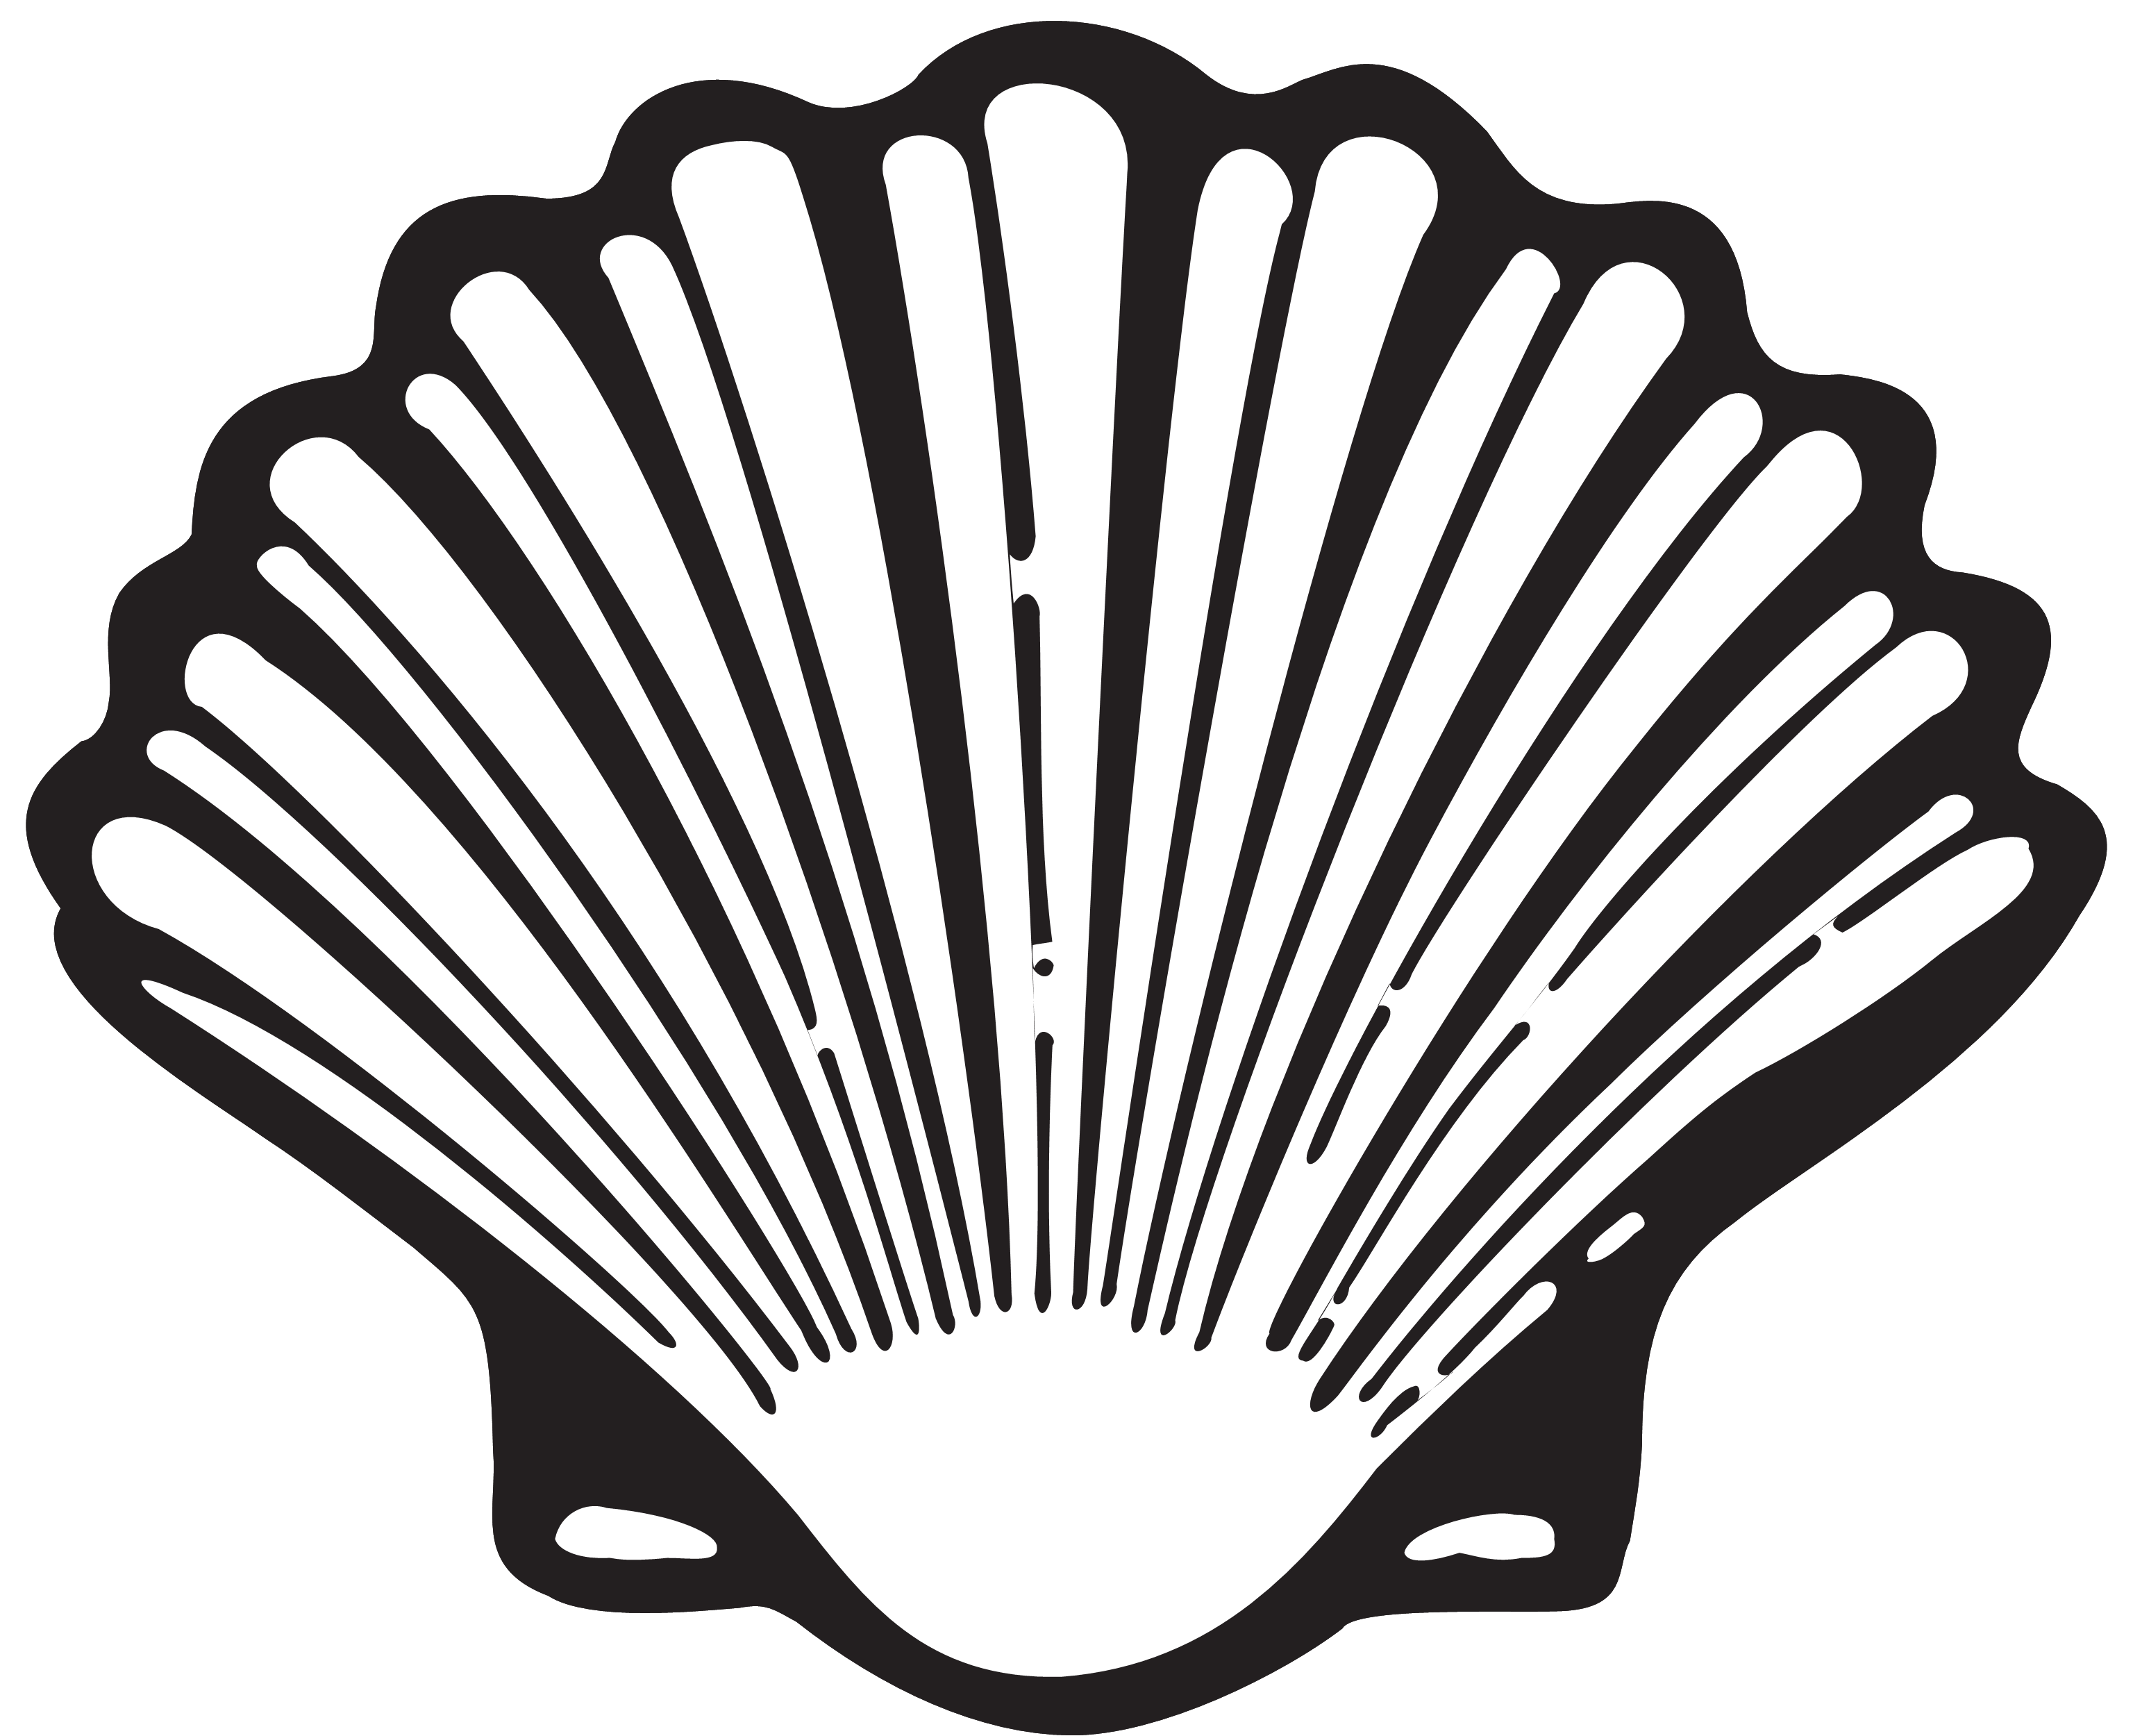 Shell scallop symbol